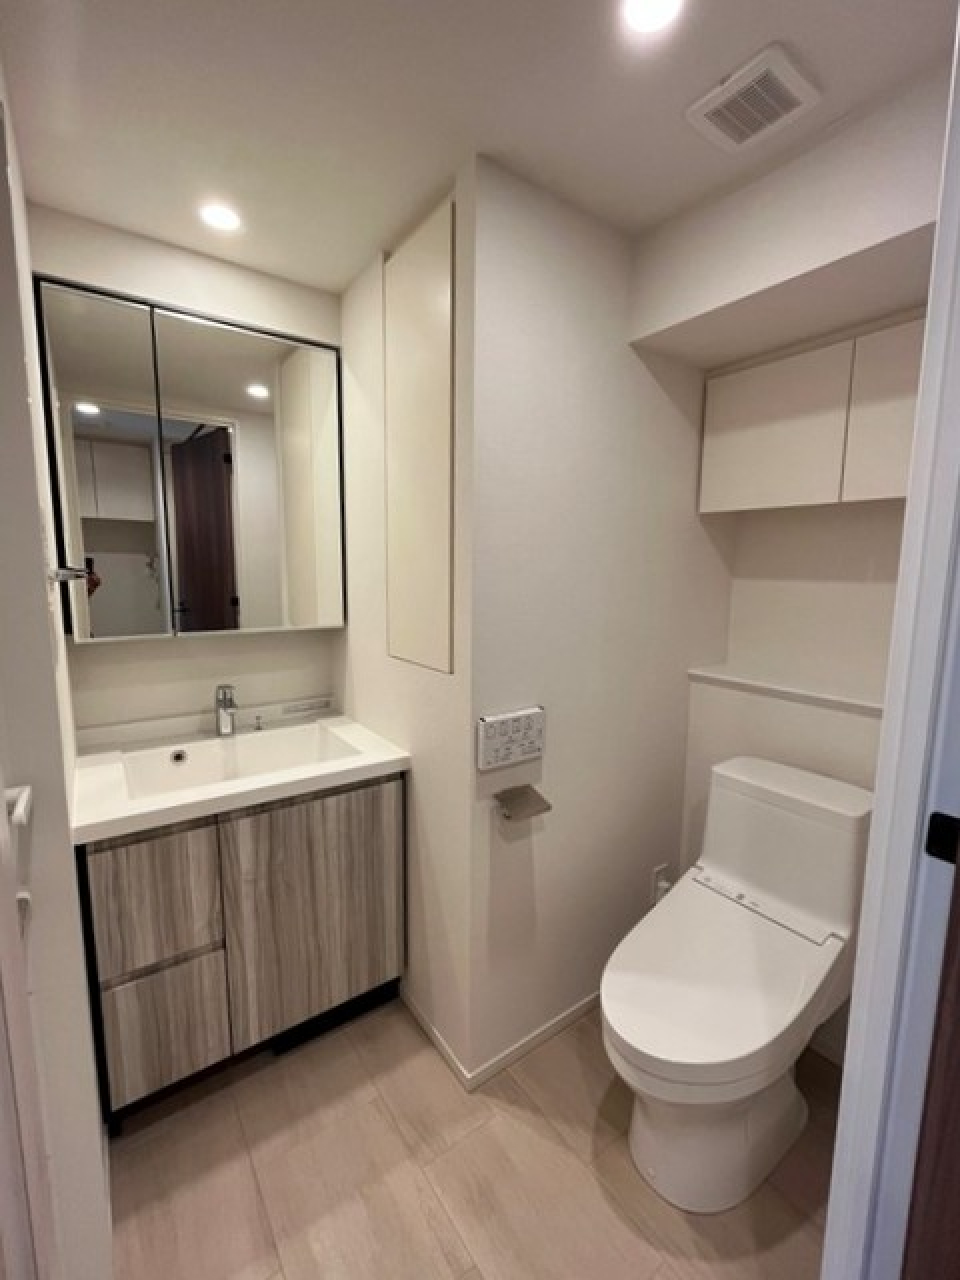 洗面台とトイレは同じ空間にあります。※写真は同タイプ住戸です。